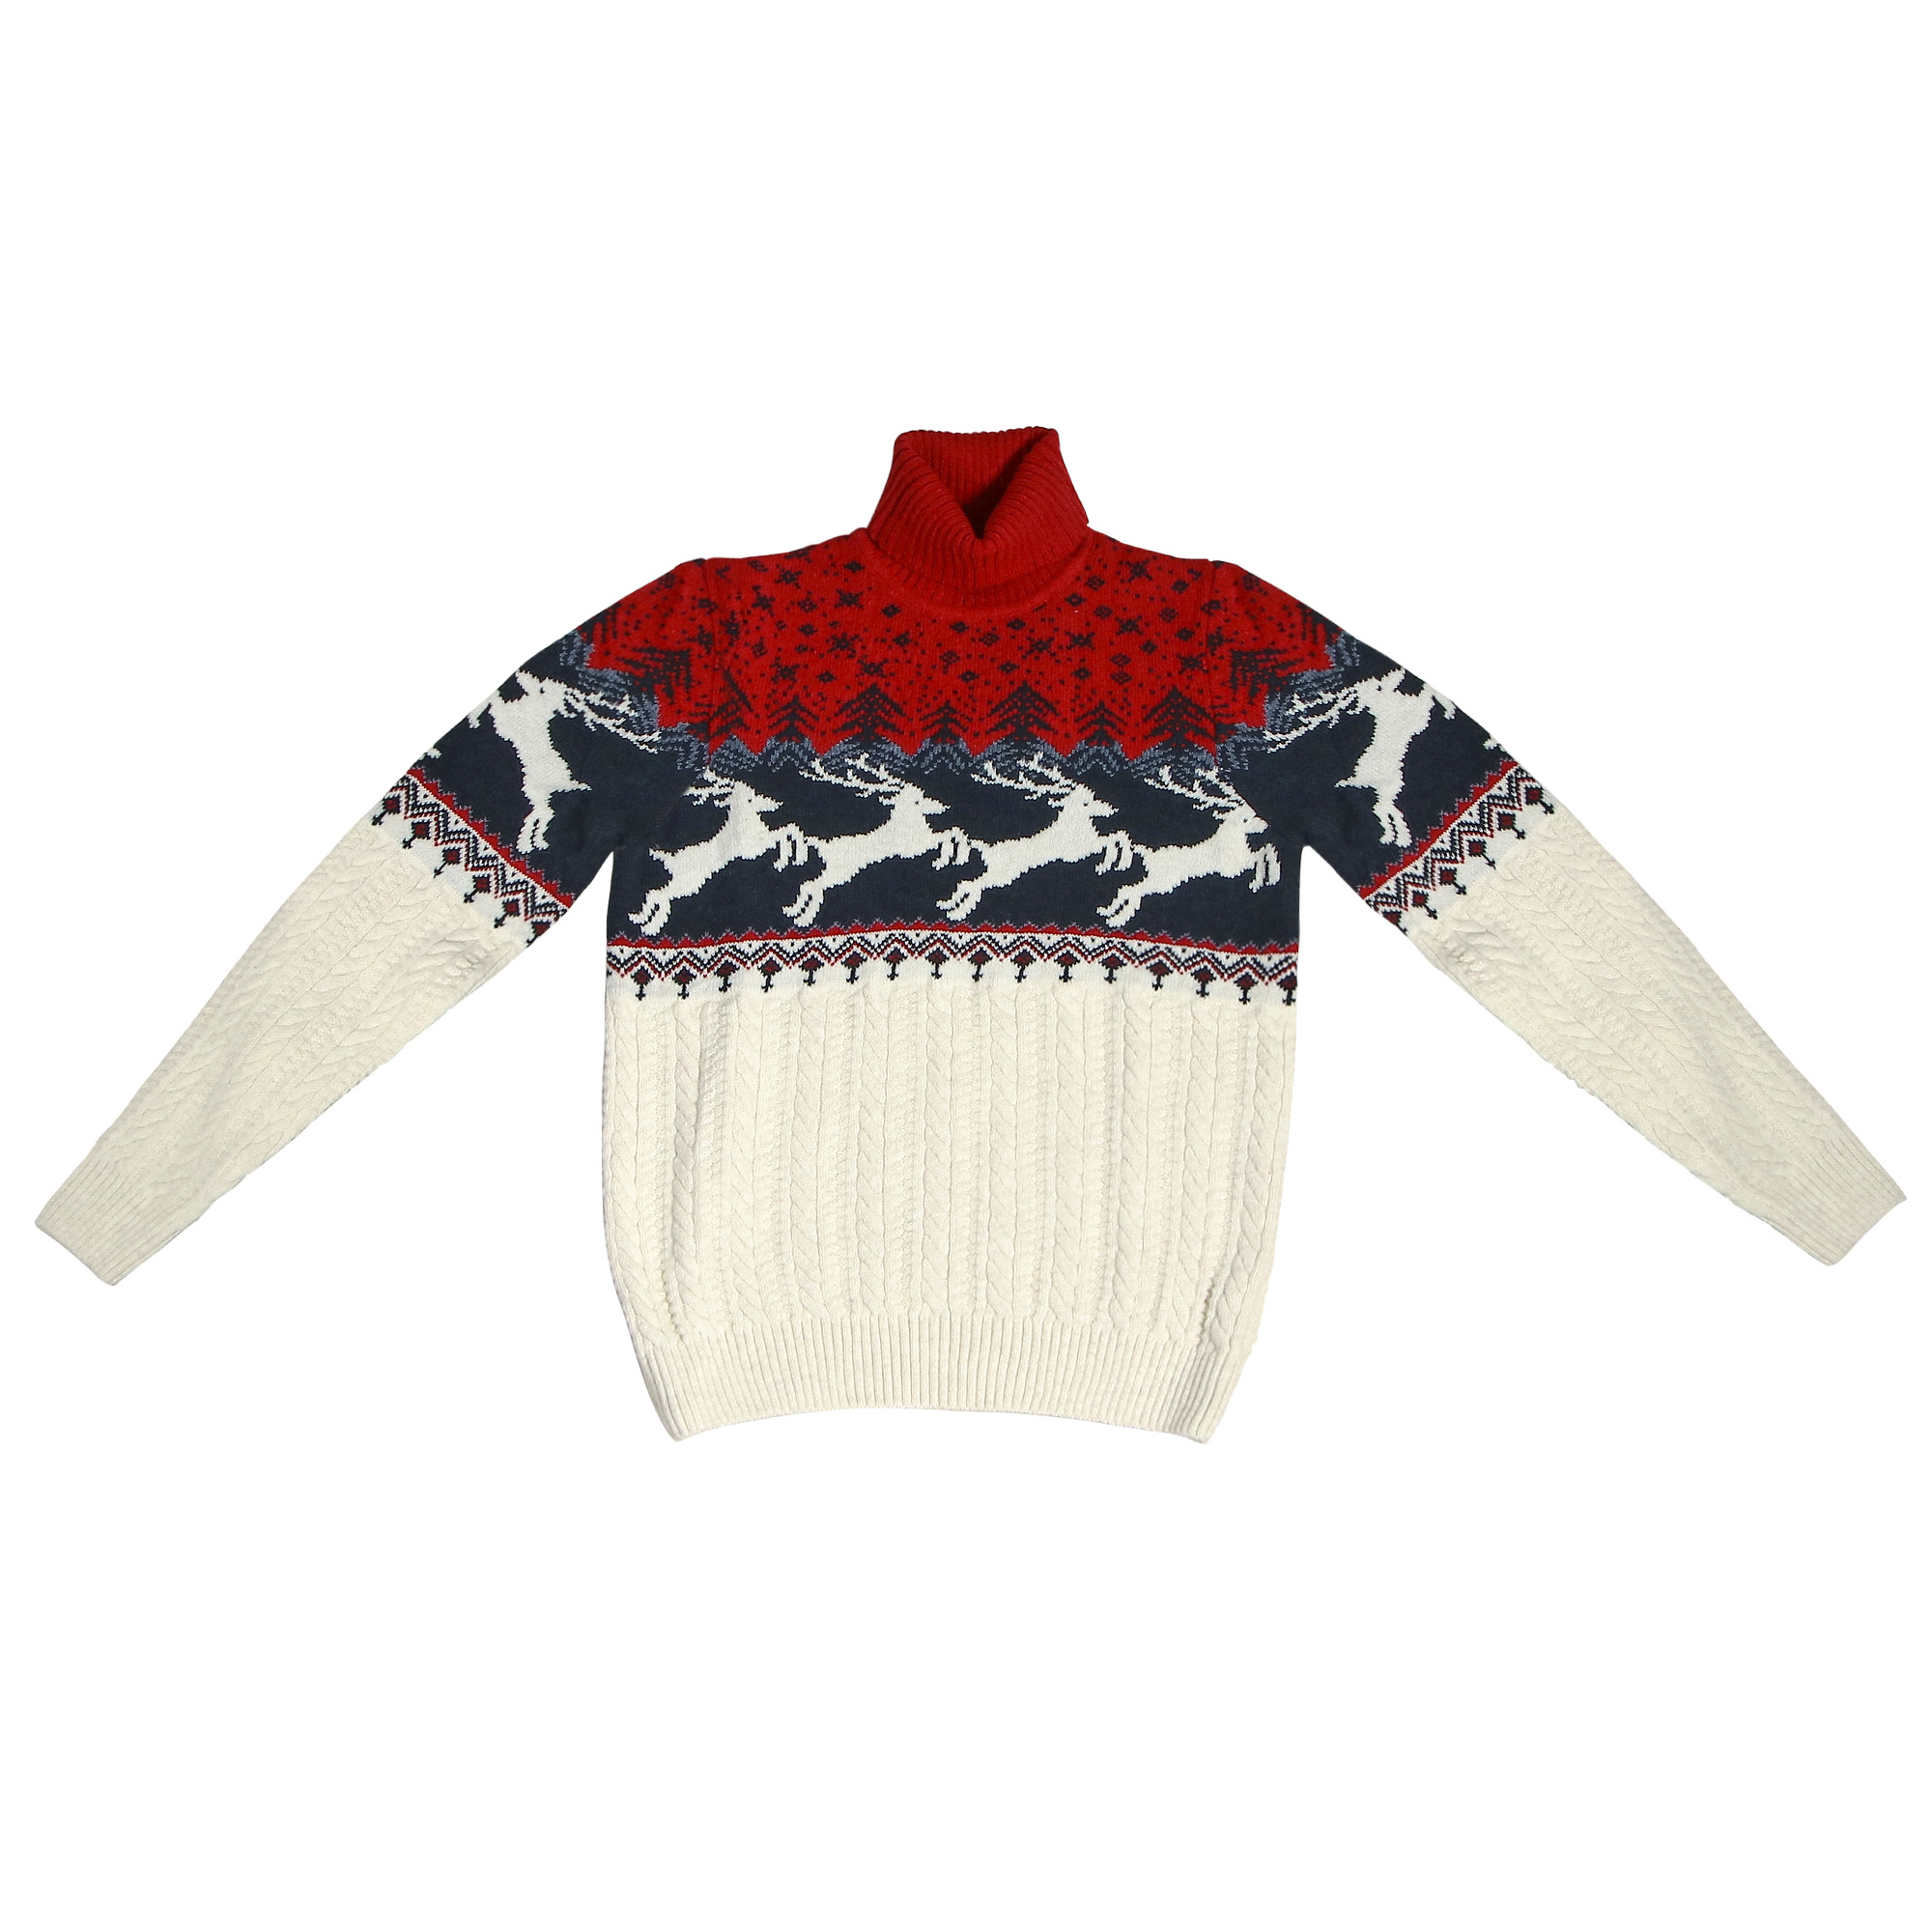 Мужской свитер Pulltonic Олень белый, цвет красный, размер M - фото 1